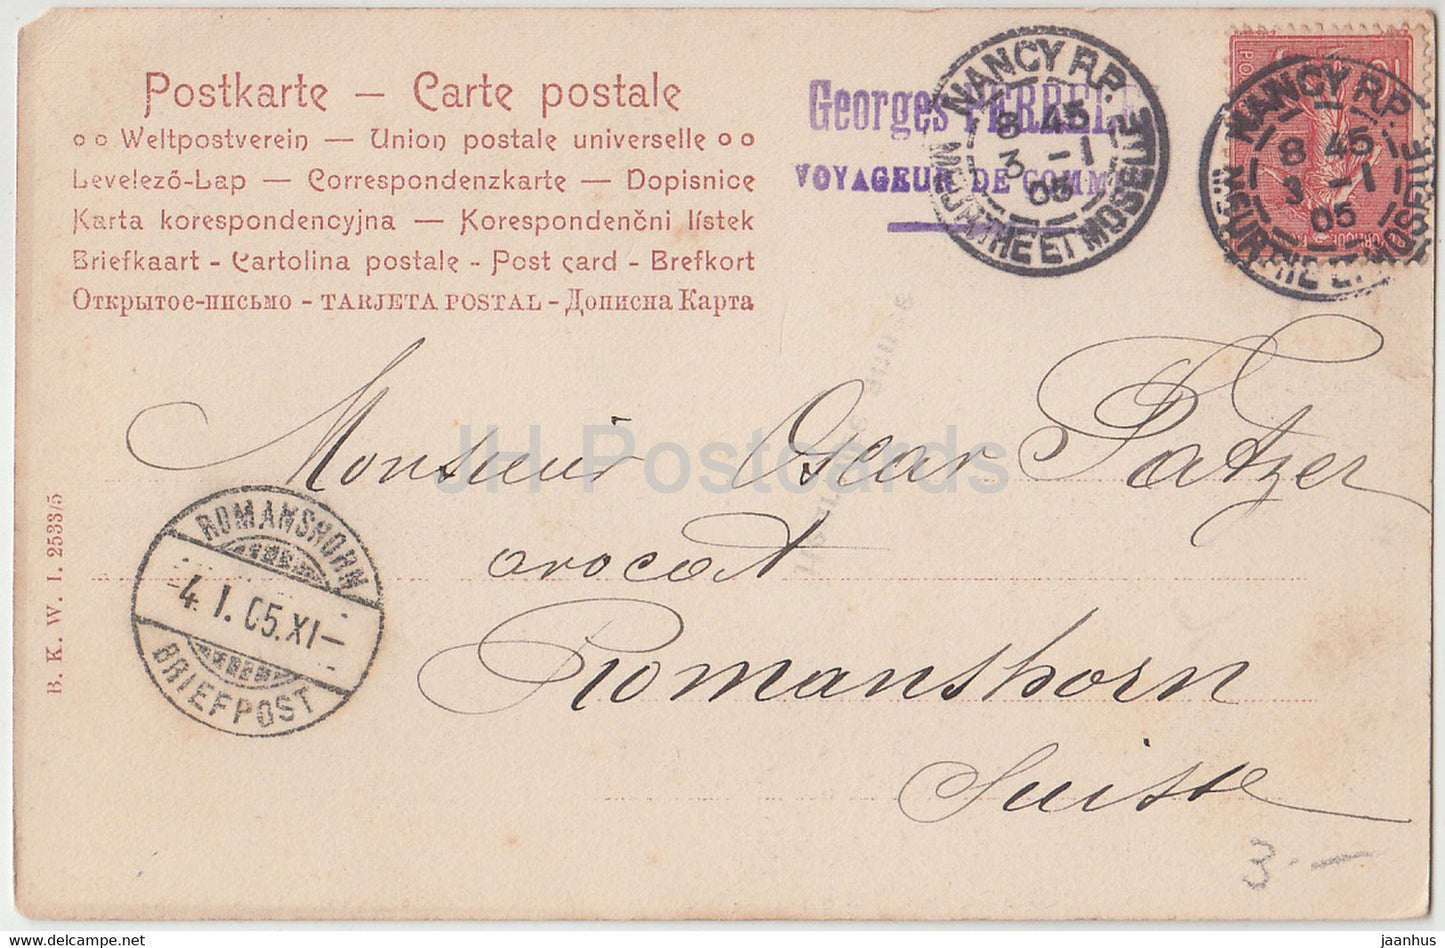 Carte de voeux du Nouvel An - Heureuse Annee - femmes - BKW 2533/5 - carte postale ancienne - 1905 - France - utilisé